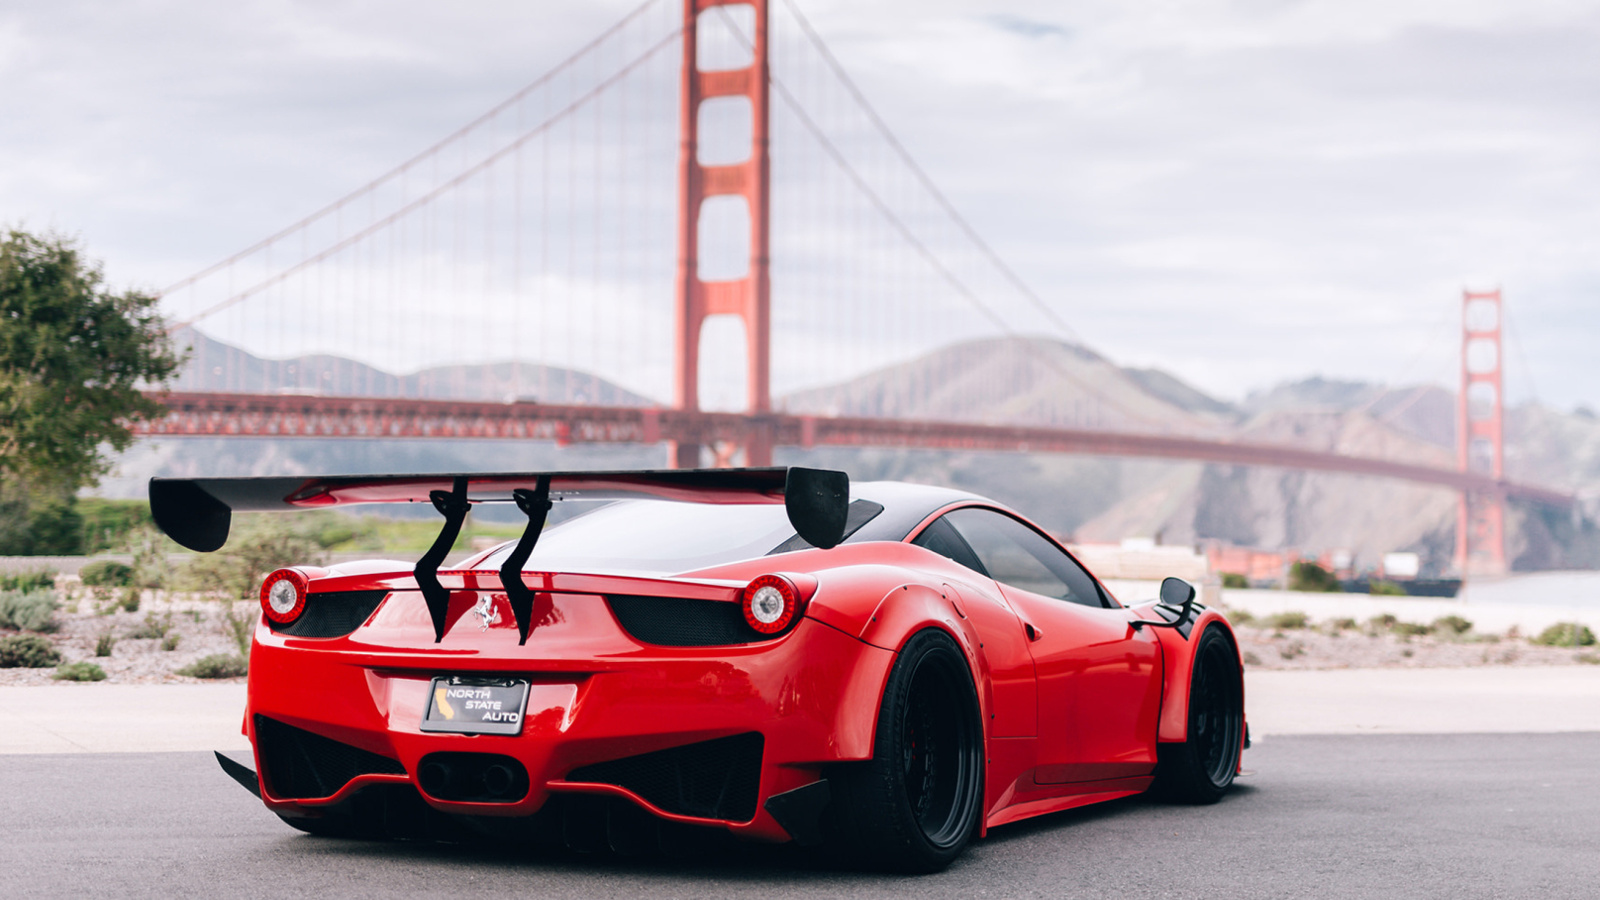 Ferrari 458 Italia near Golden Gate Bridge wallpaper 1600x900